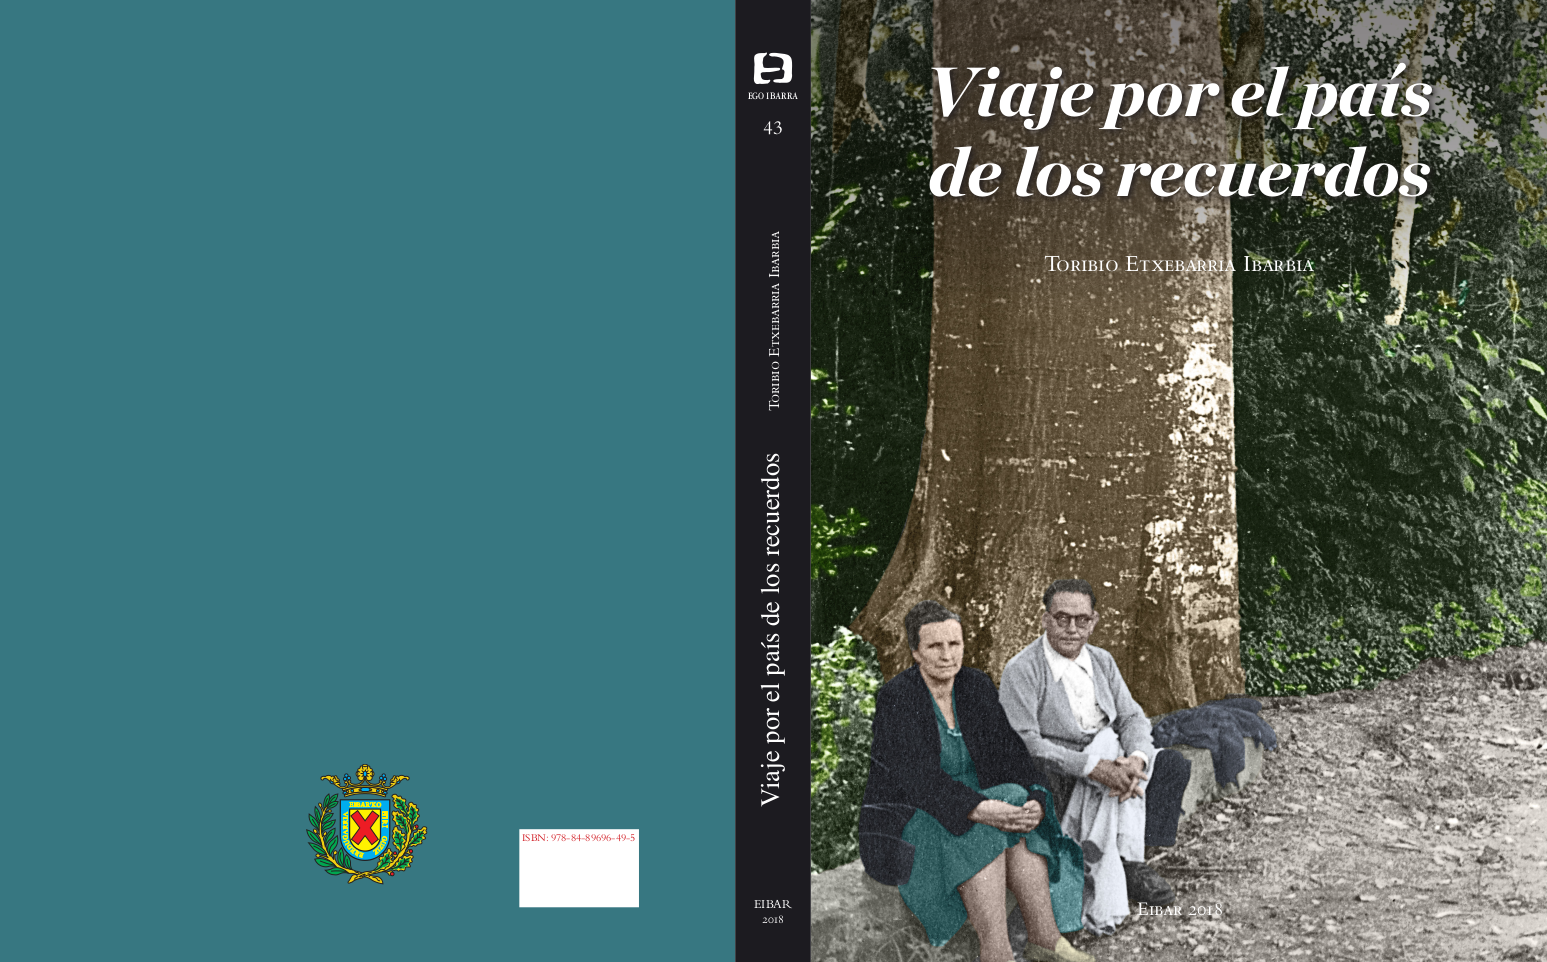 El libro Viaje por el país de los recuerdos de Toribio Etxeberria se presentará el 19 de diciembre en el Ayuntamiento de Eibar